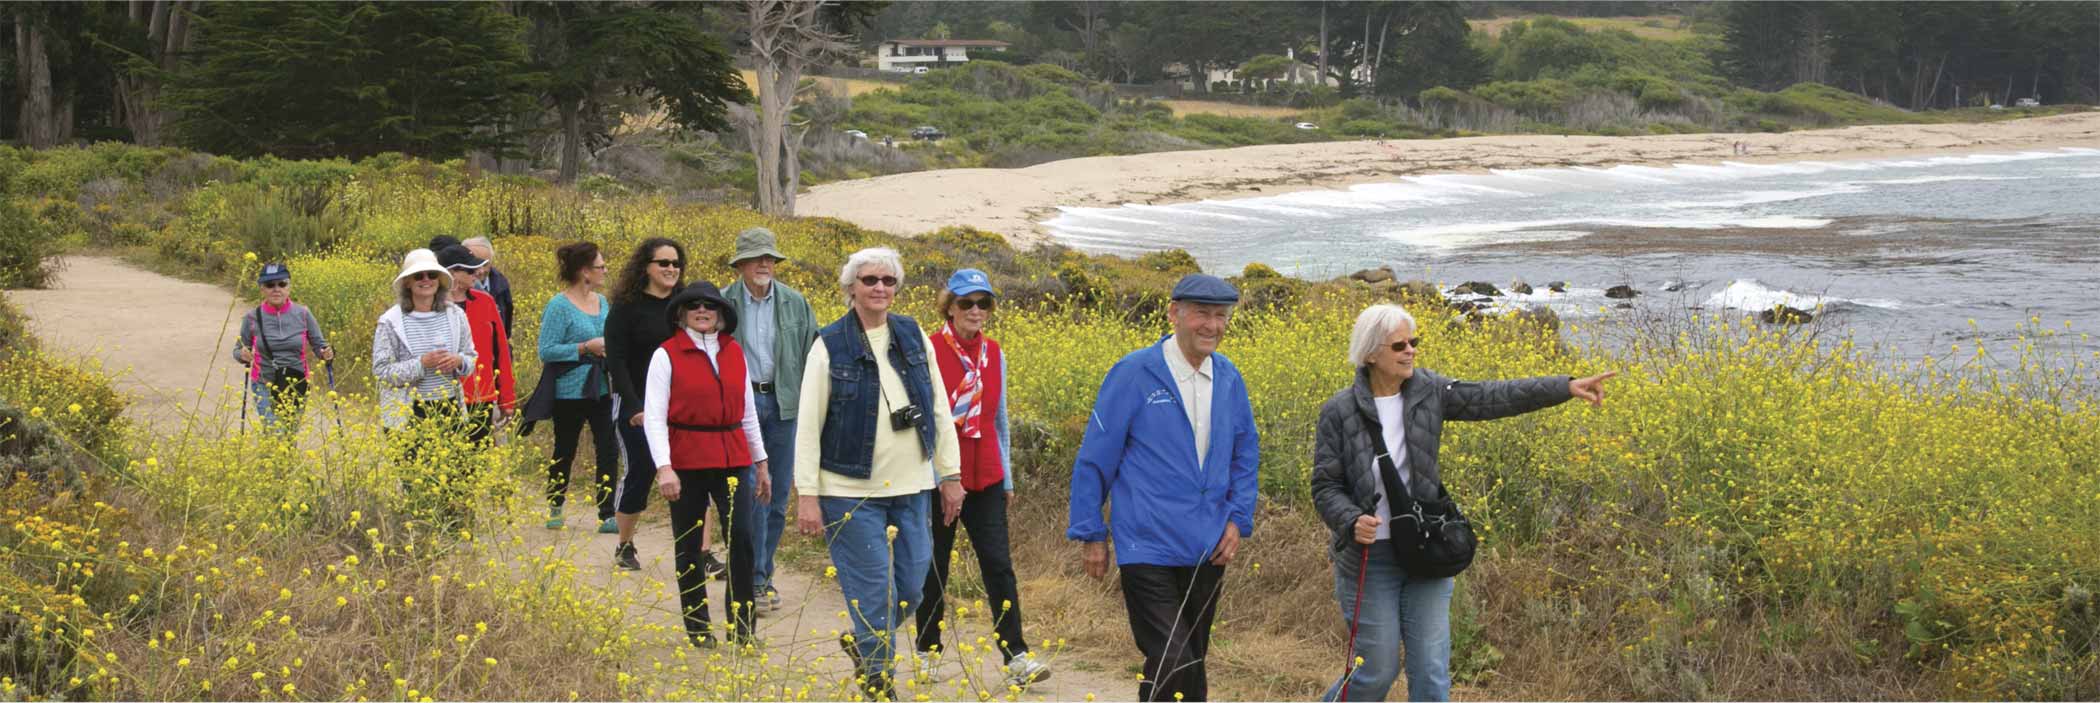 Carmel Foundation Walking Group walking near the ocean